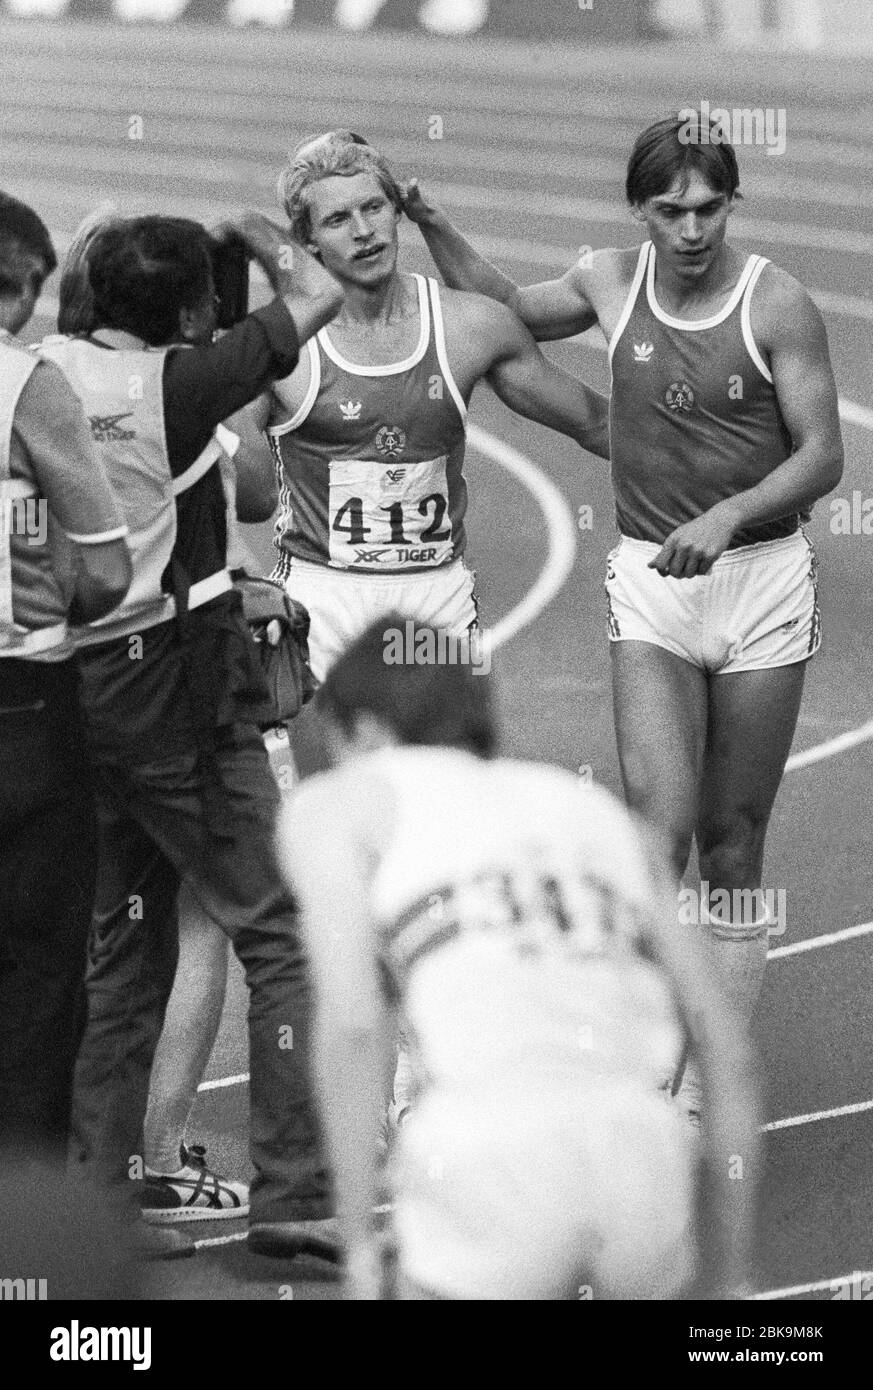 OLAF PRENZLER Ostdeutschland gewinnt 200 m bei der Europameisterschaft in Stuttgart 1986 und Felicitate von Landsmann Frank Emmelmann finnisch vier Stockfoto